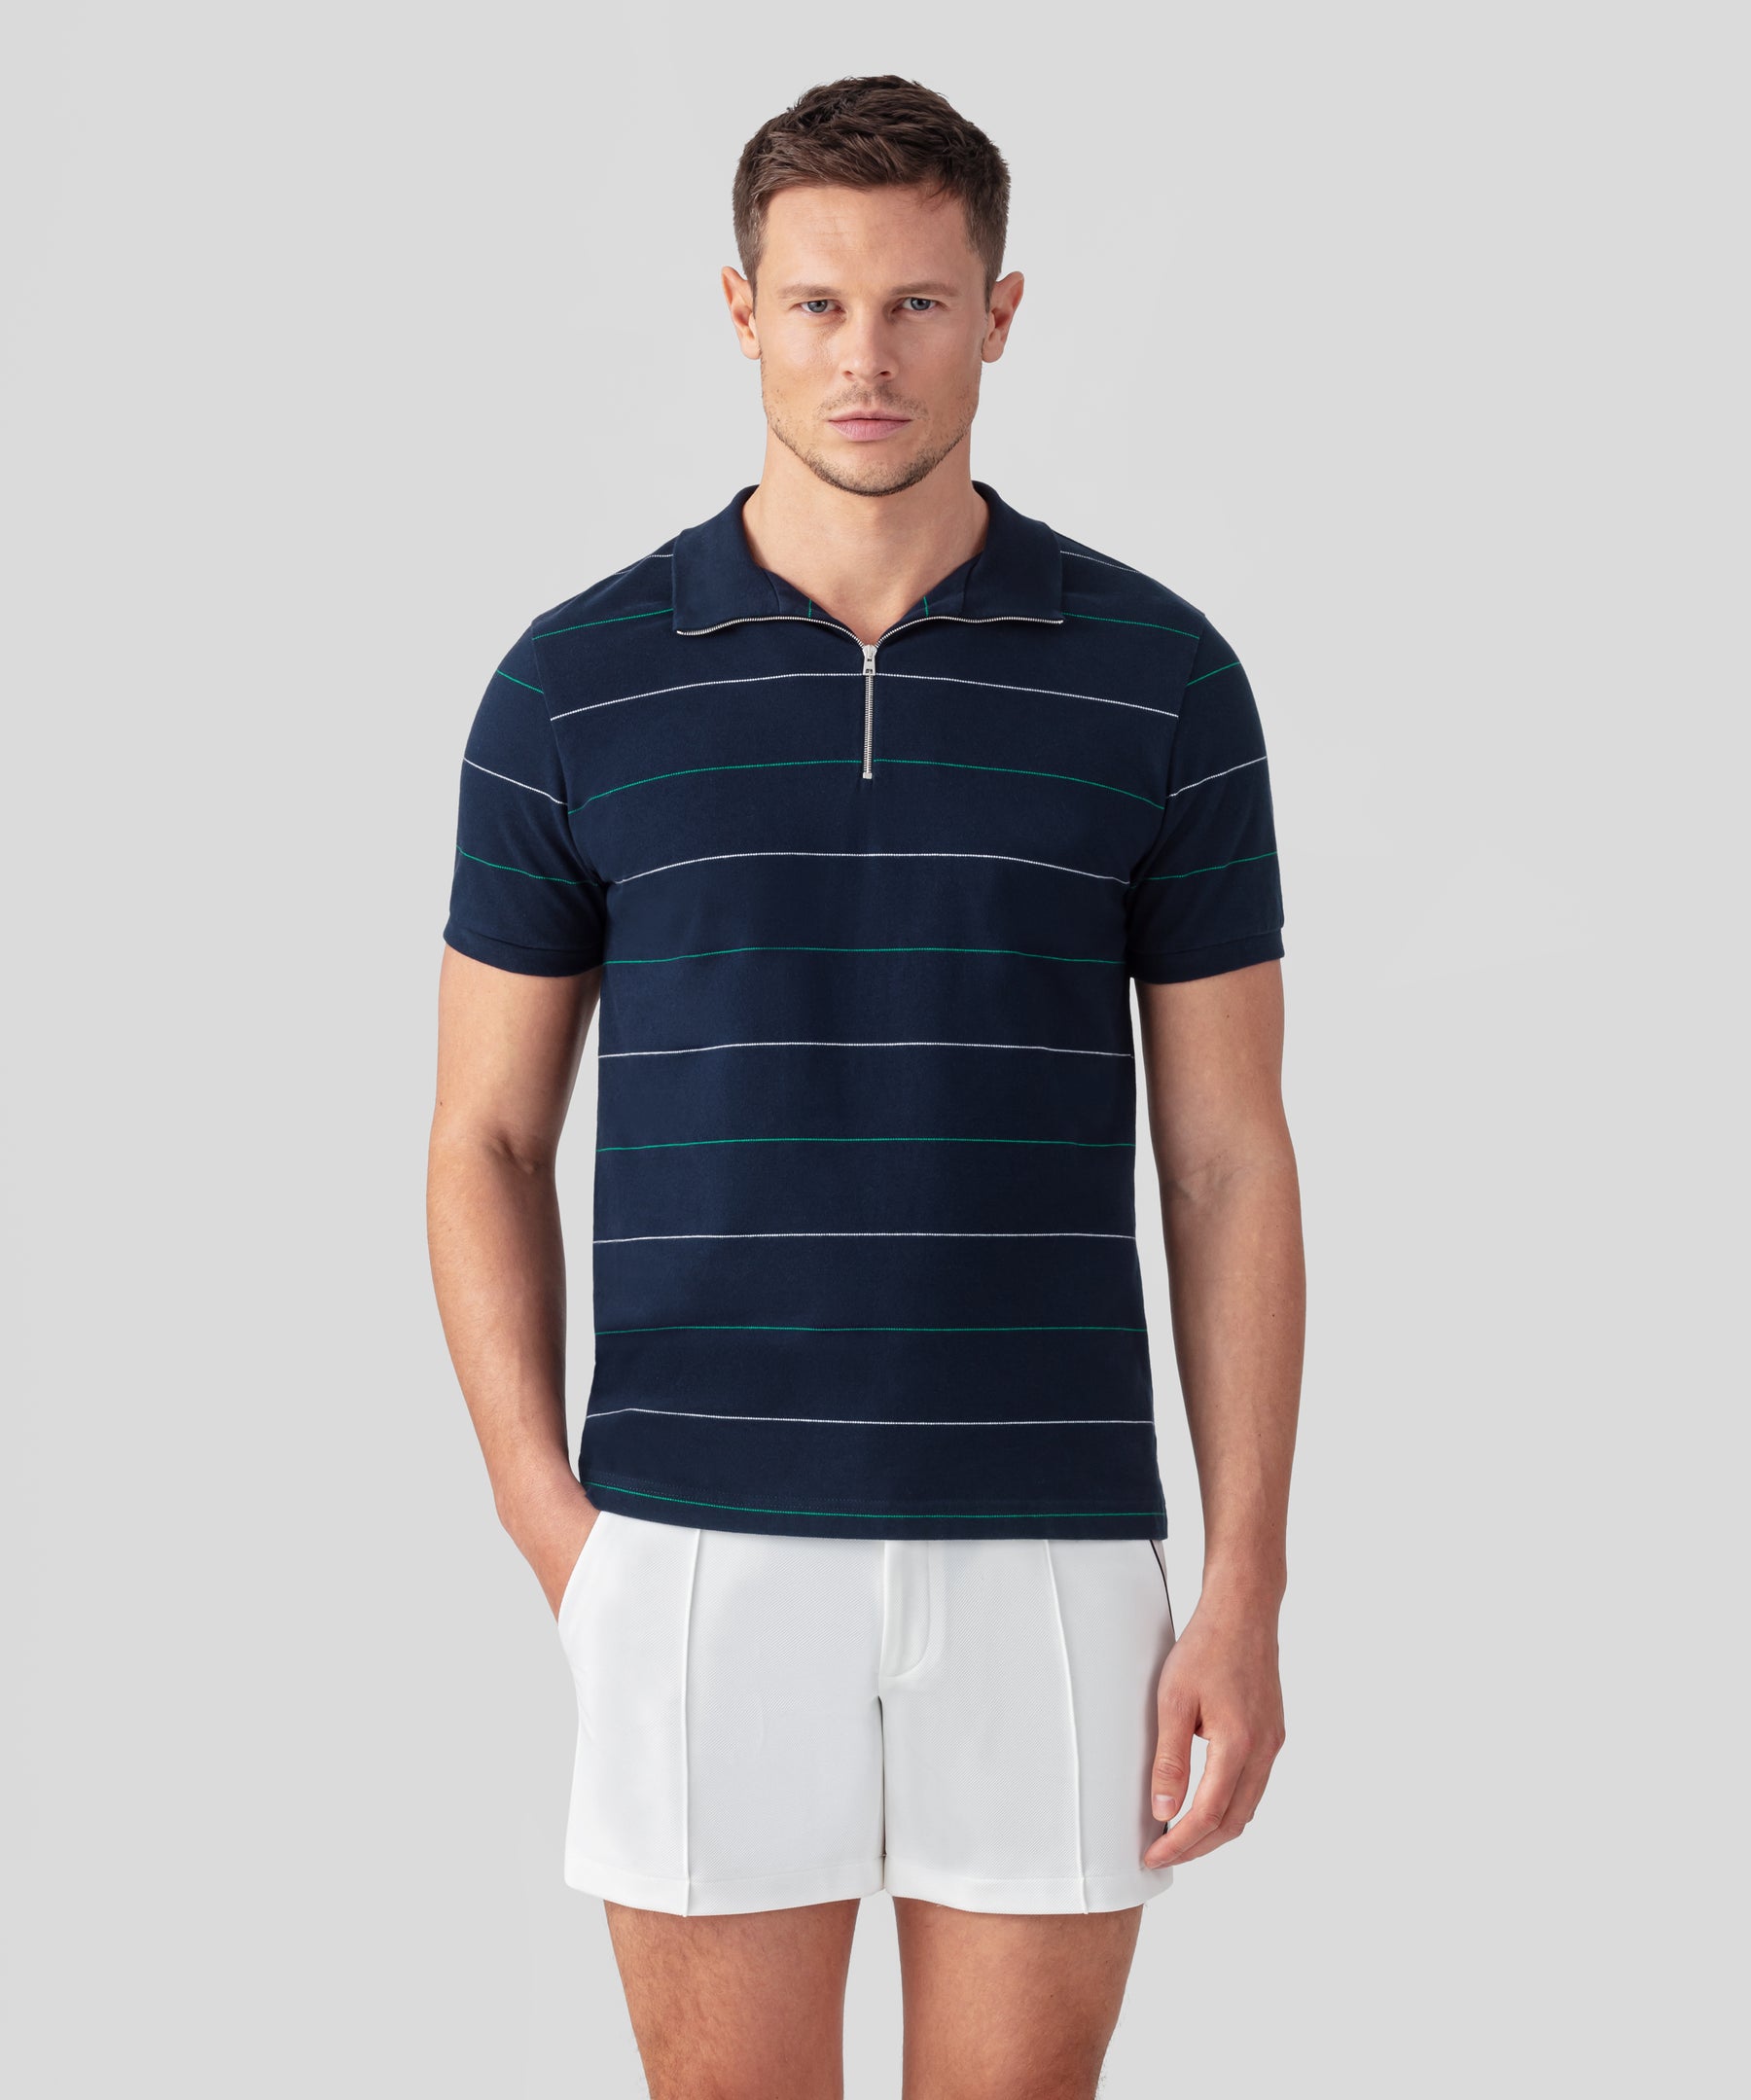 Cotton Piqué RD Polo w. Tennis Stripes: Navy